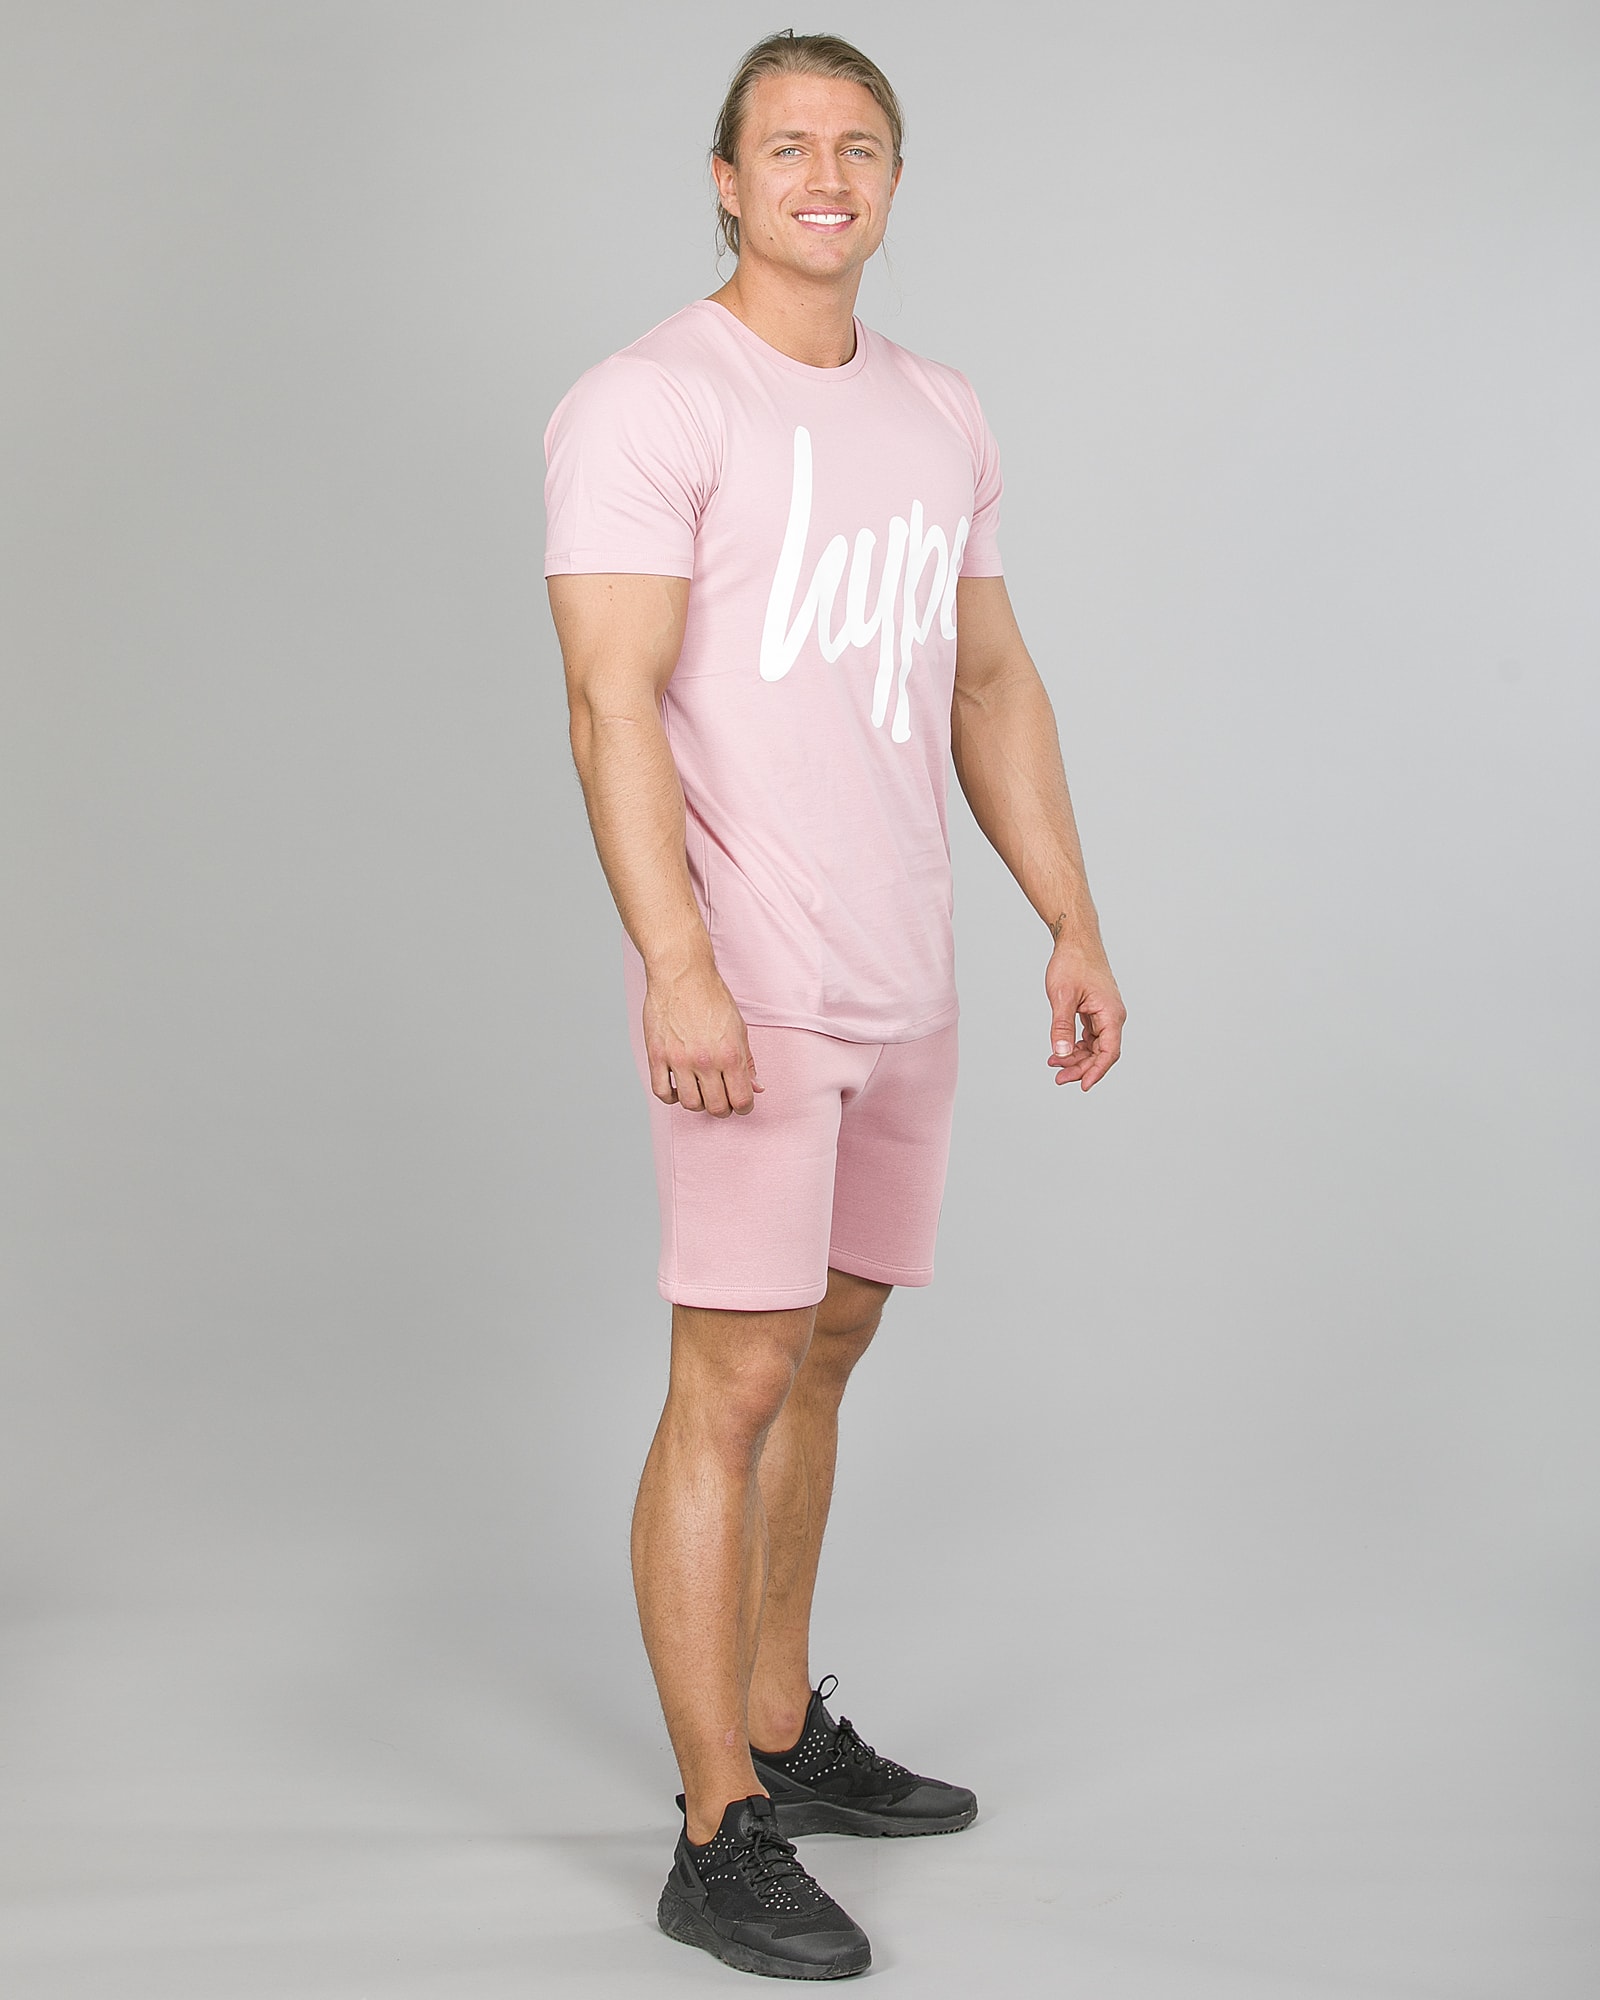 Hype Script T-Shirt Men ss18004 Pink and Crest Shorts ss18330 Pink d